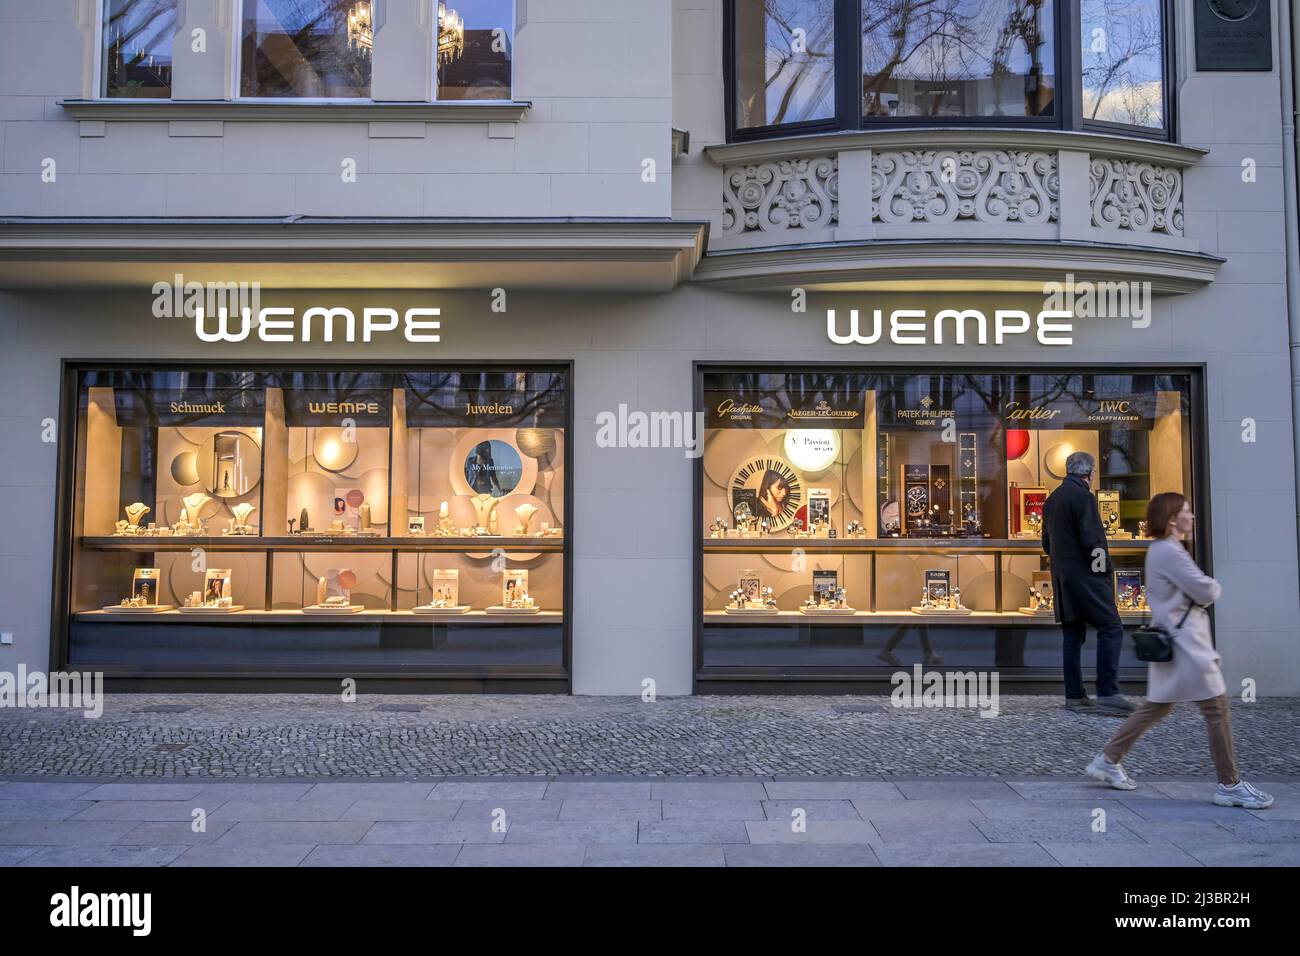 Juwelier Wempe, Kurfürstendamm, Charlottenburg-Wilmersdorf, Berlin,  Deutschland Stockfotografie - Alamy